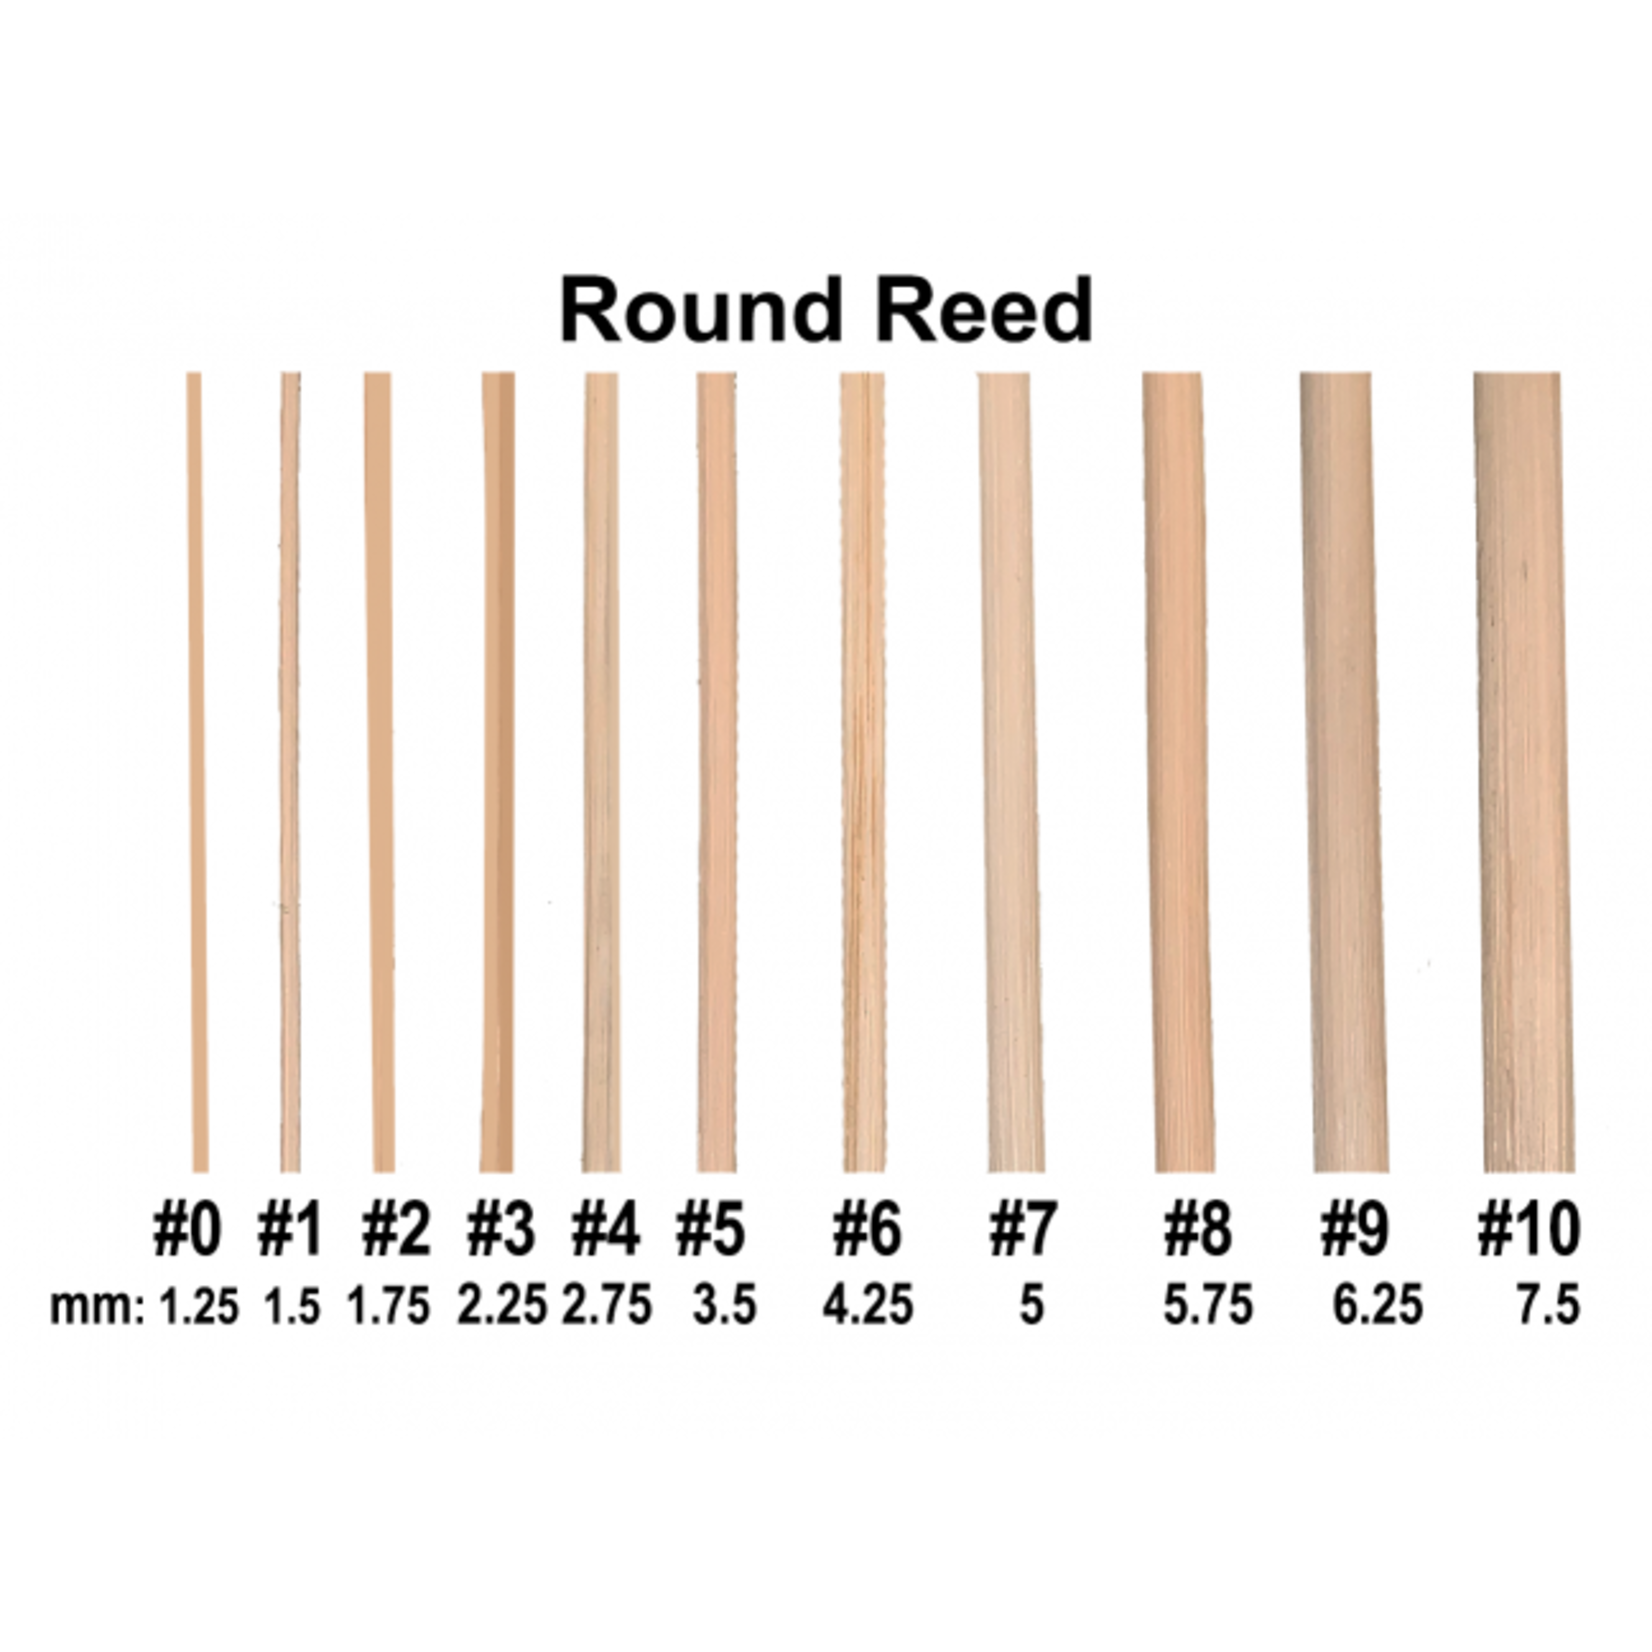 Royalwood, Ltd Round Reed Size #9